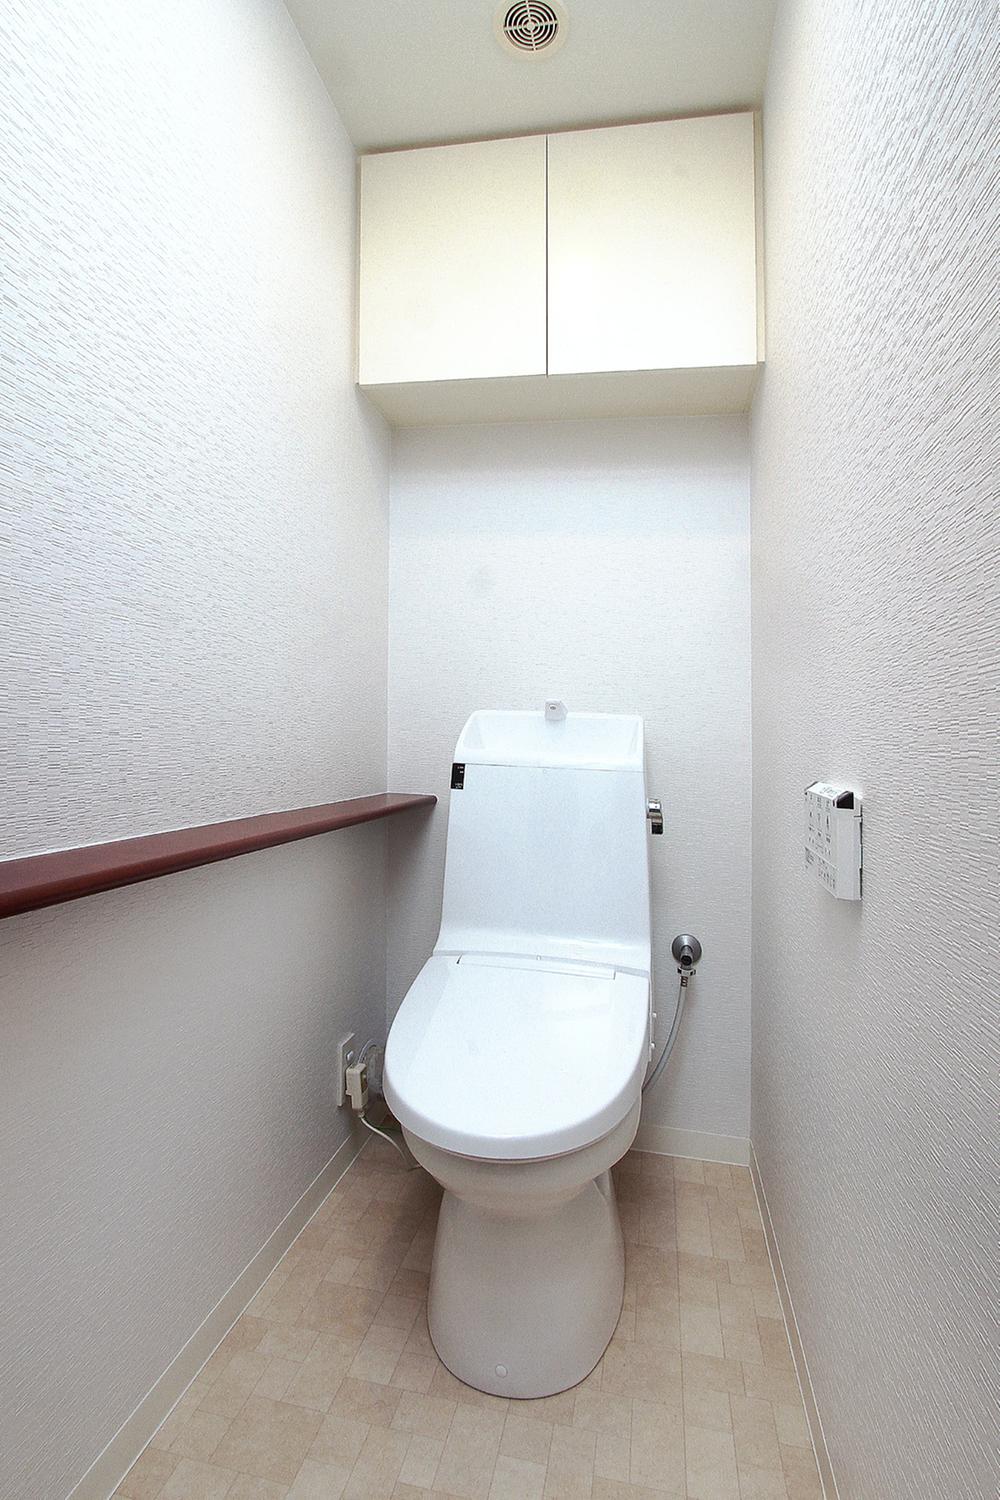 Toilet.  [toilet] ... (2013 / 7 / 1 shooting)